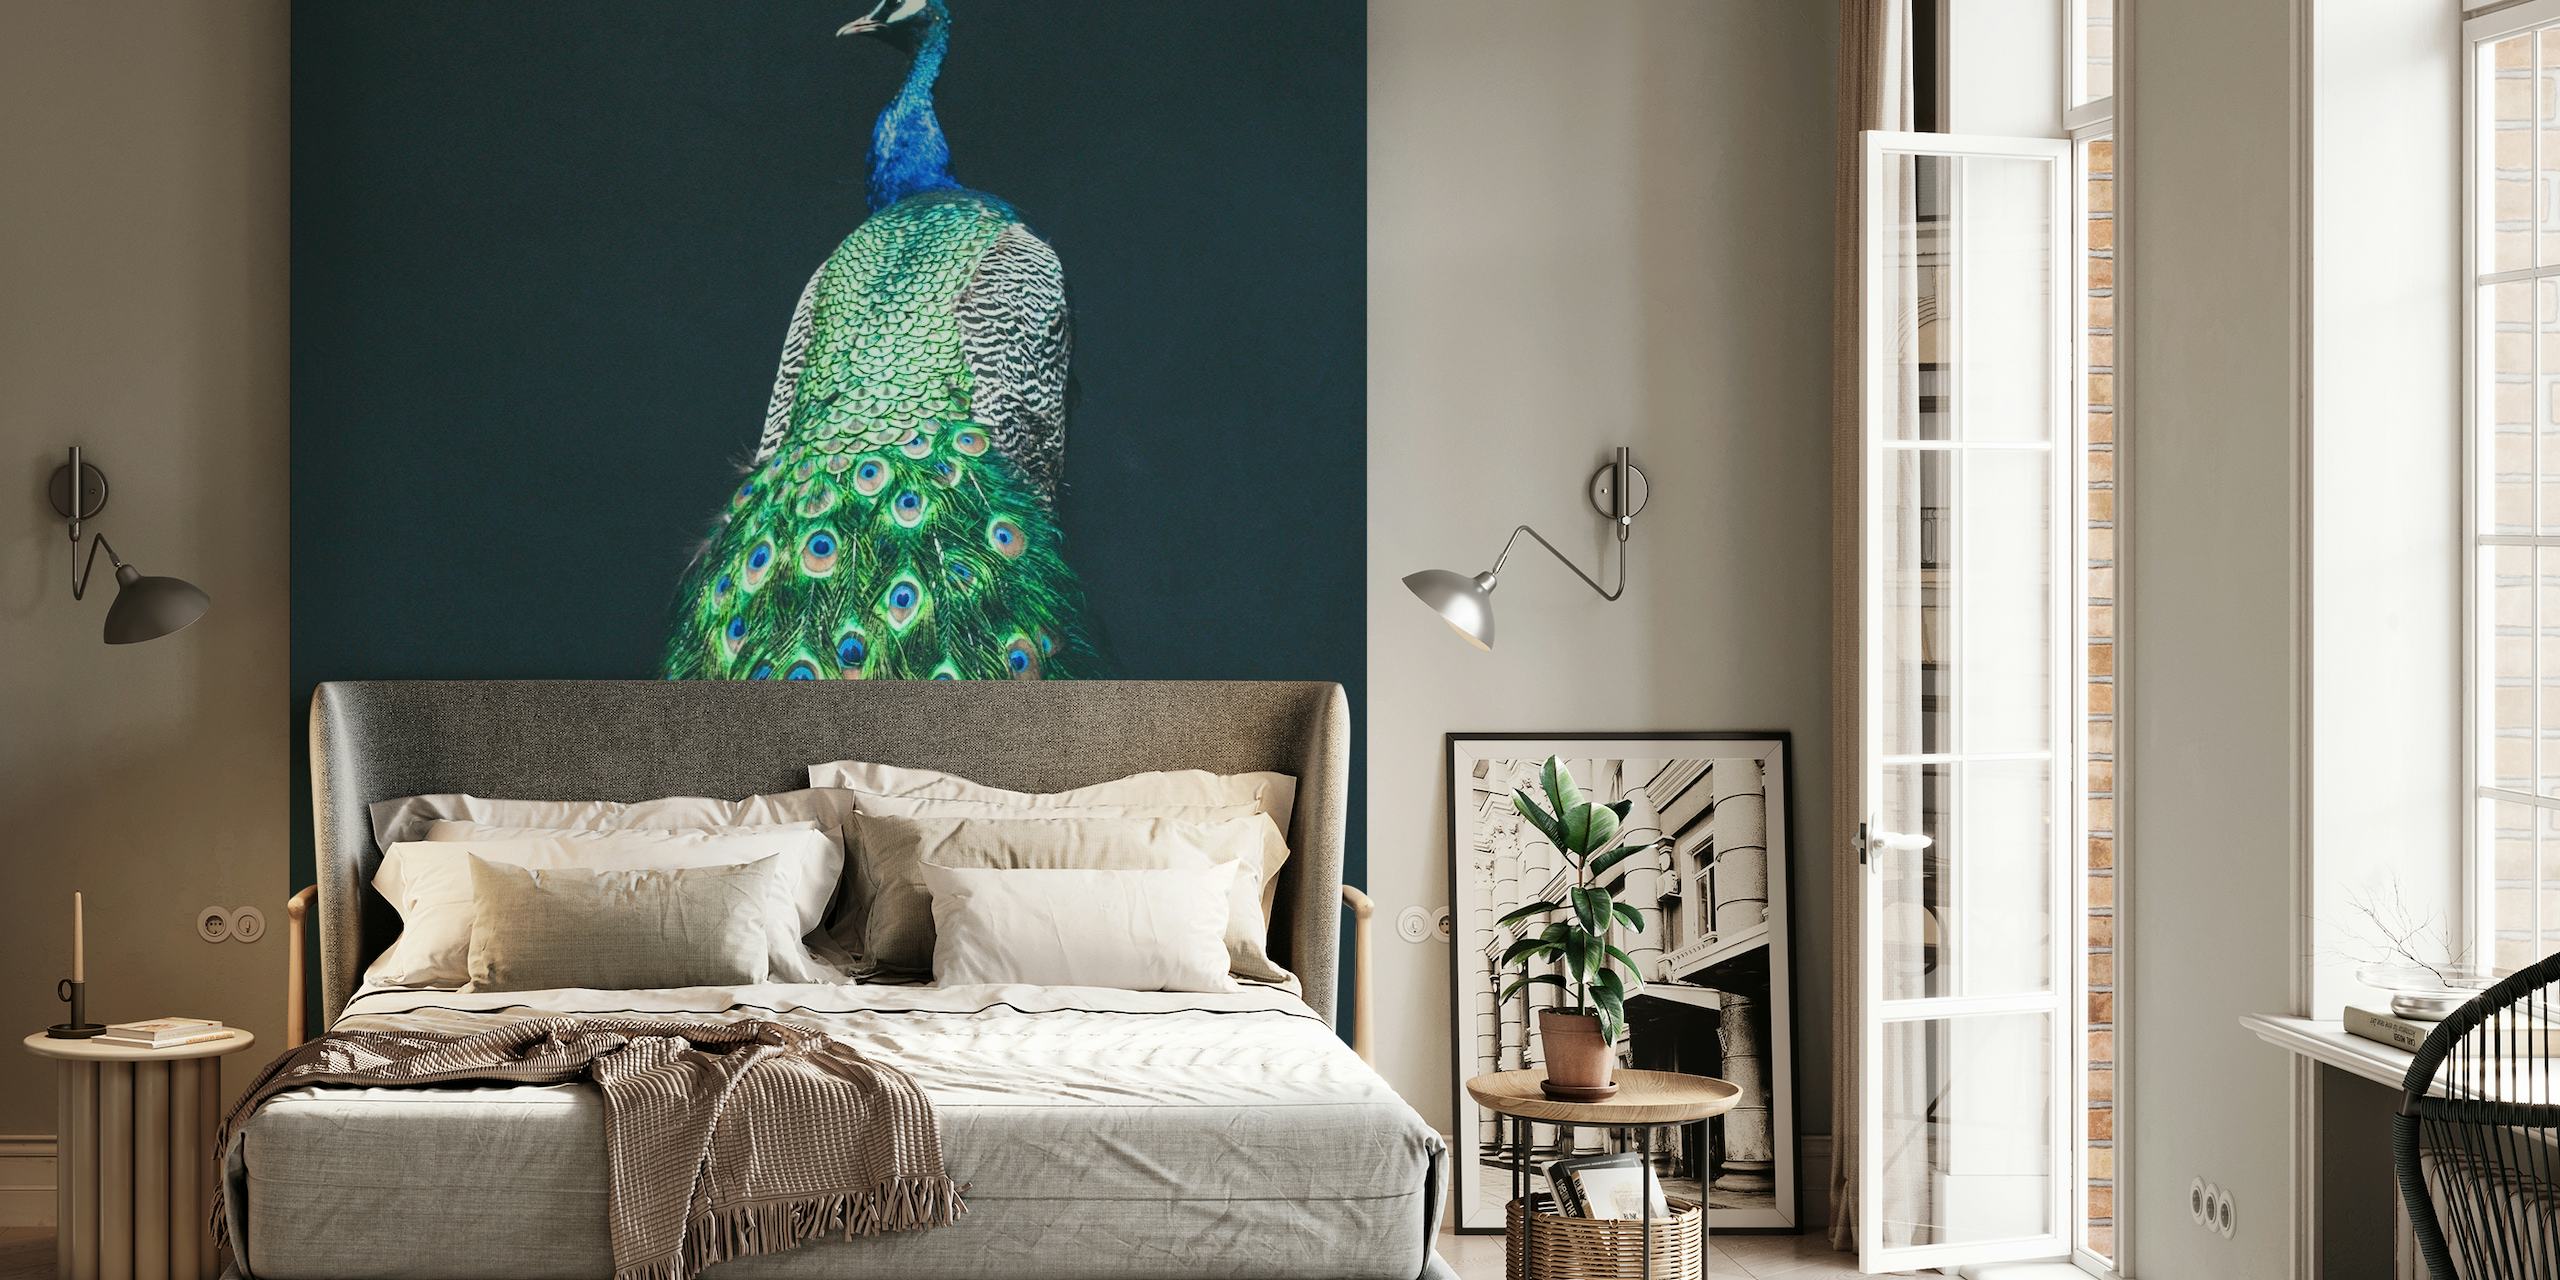 Peacock I papel pintado